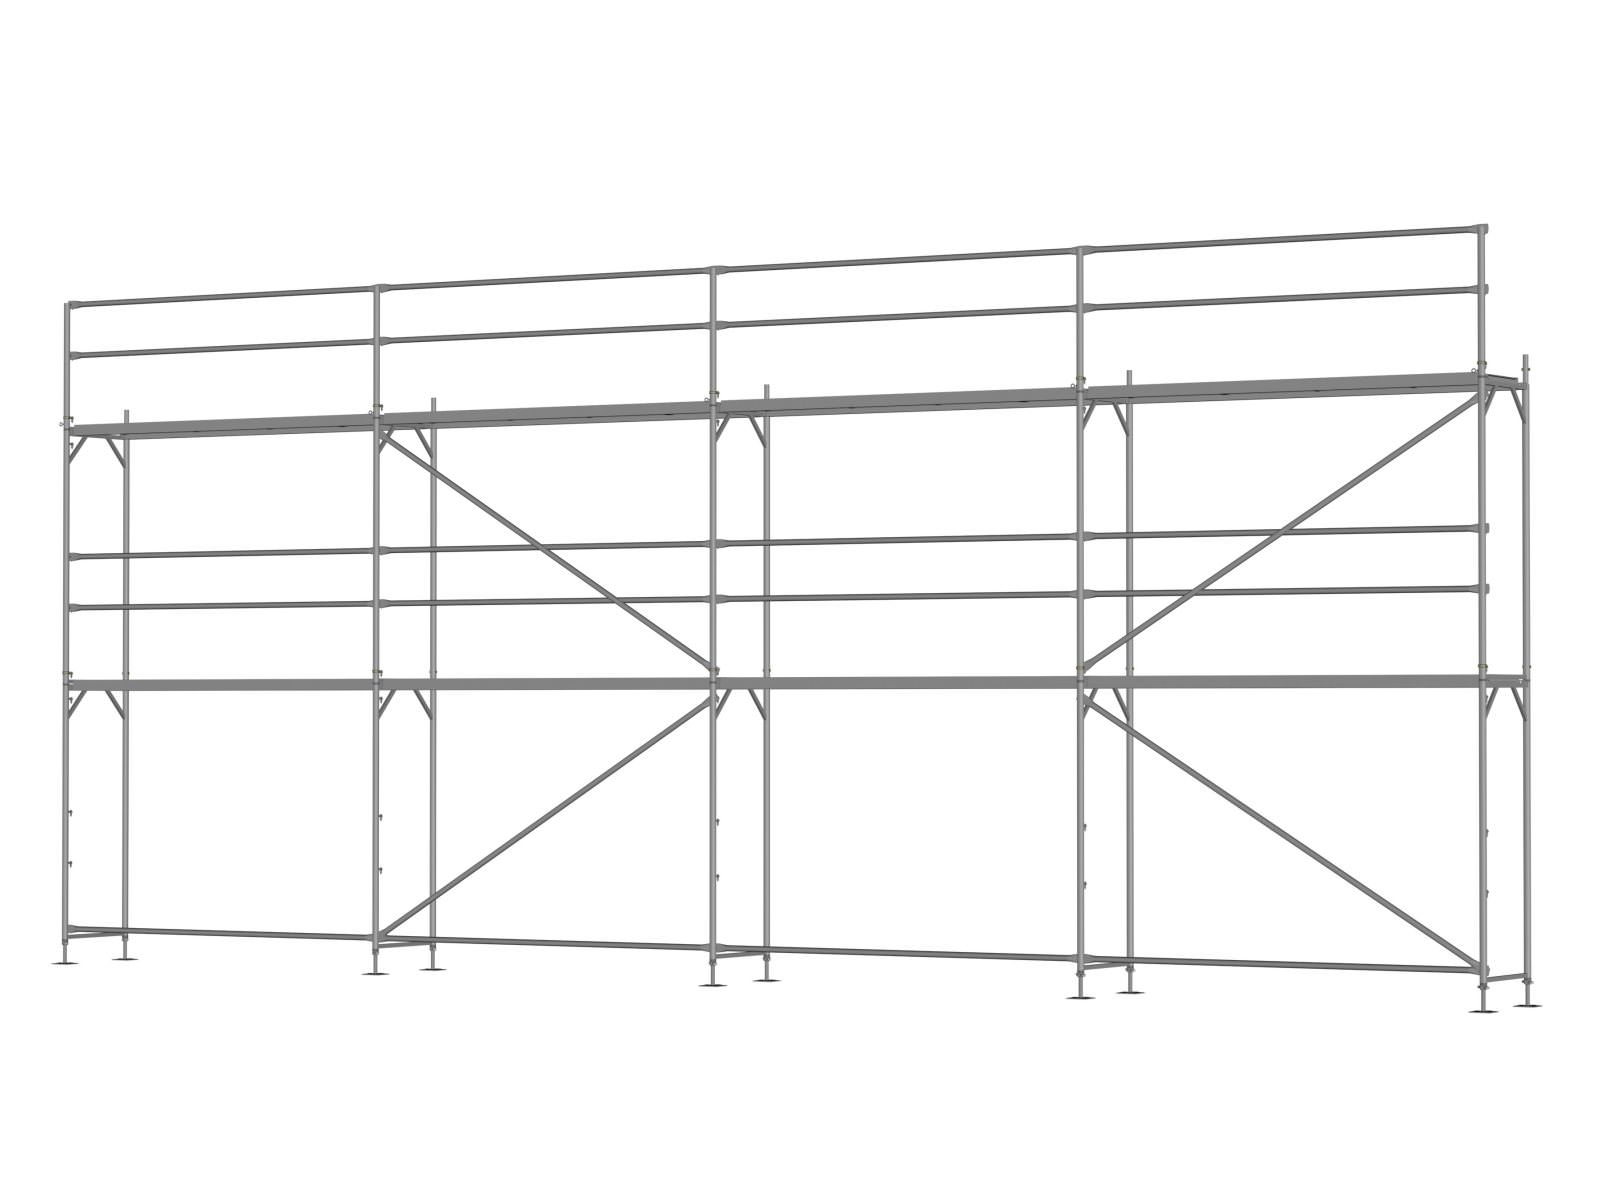 Alu Traufseitengerüst 72 qm - 3,0 m Felder - 12 m lang - 6 m Arbeitshöhe - Basis-Gerüst